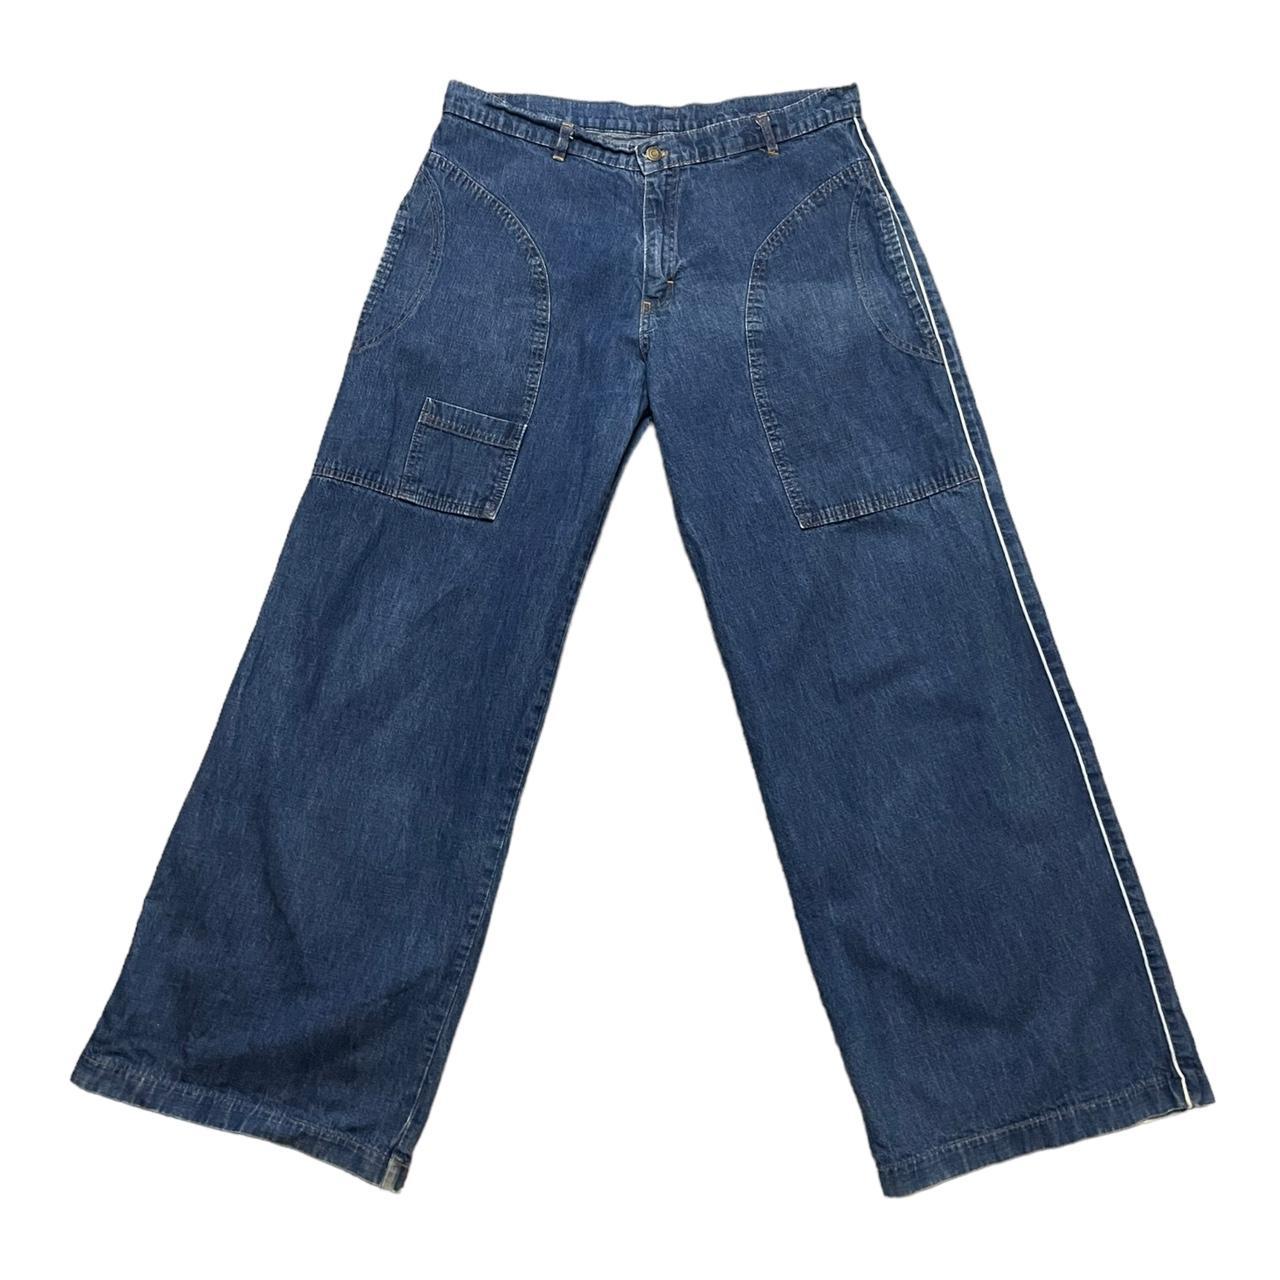 ⚡️ 90s vintage Criminal Damage skate jeans ⚡️ super... - Depop